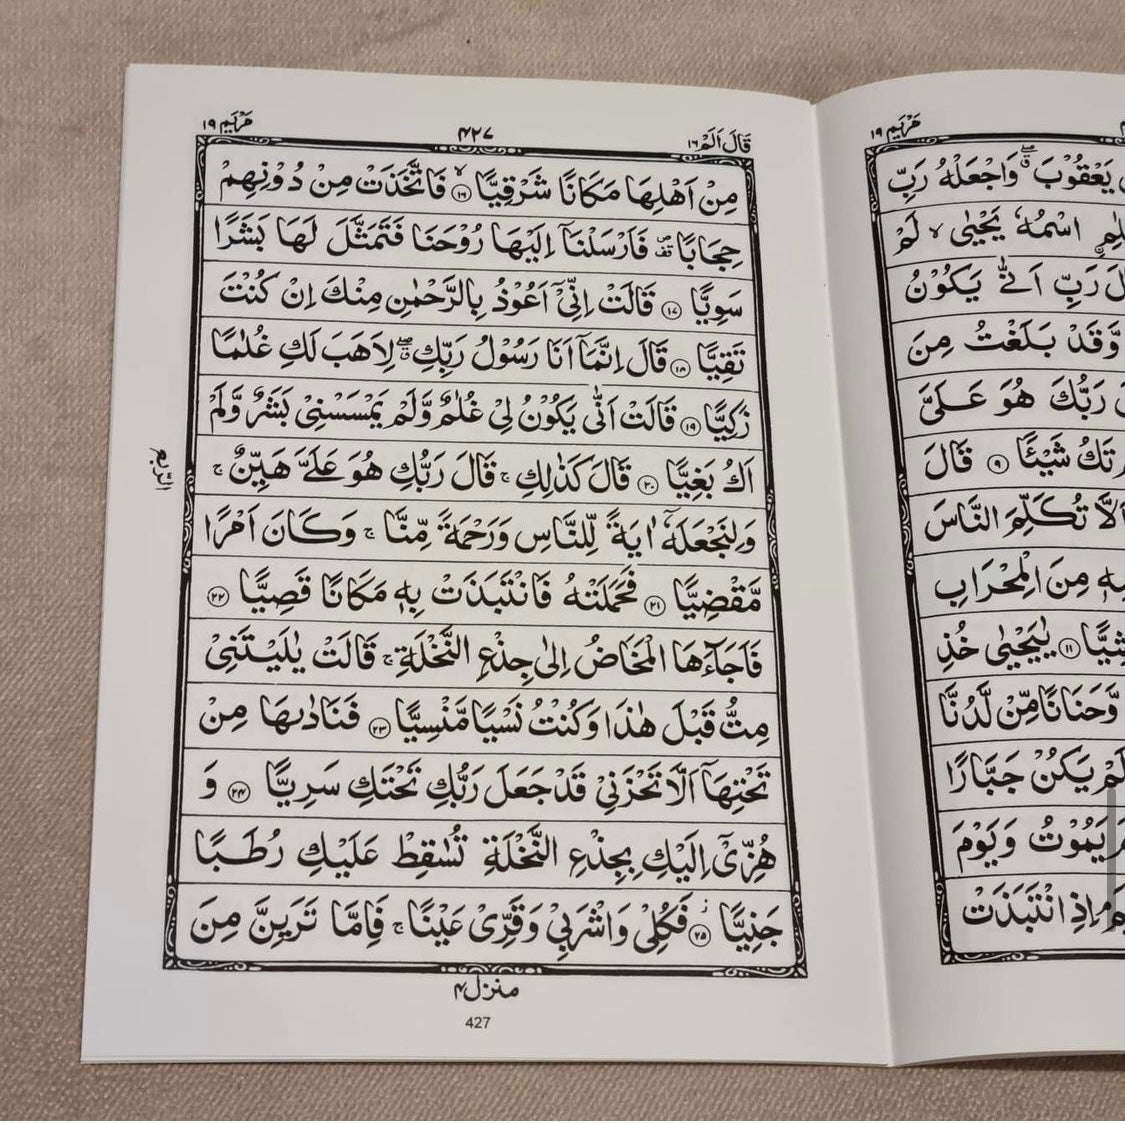 Grey Marble Single Para Quran &amp; 41 Yaseens Stel A5